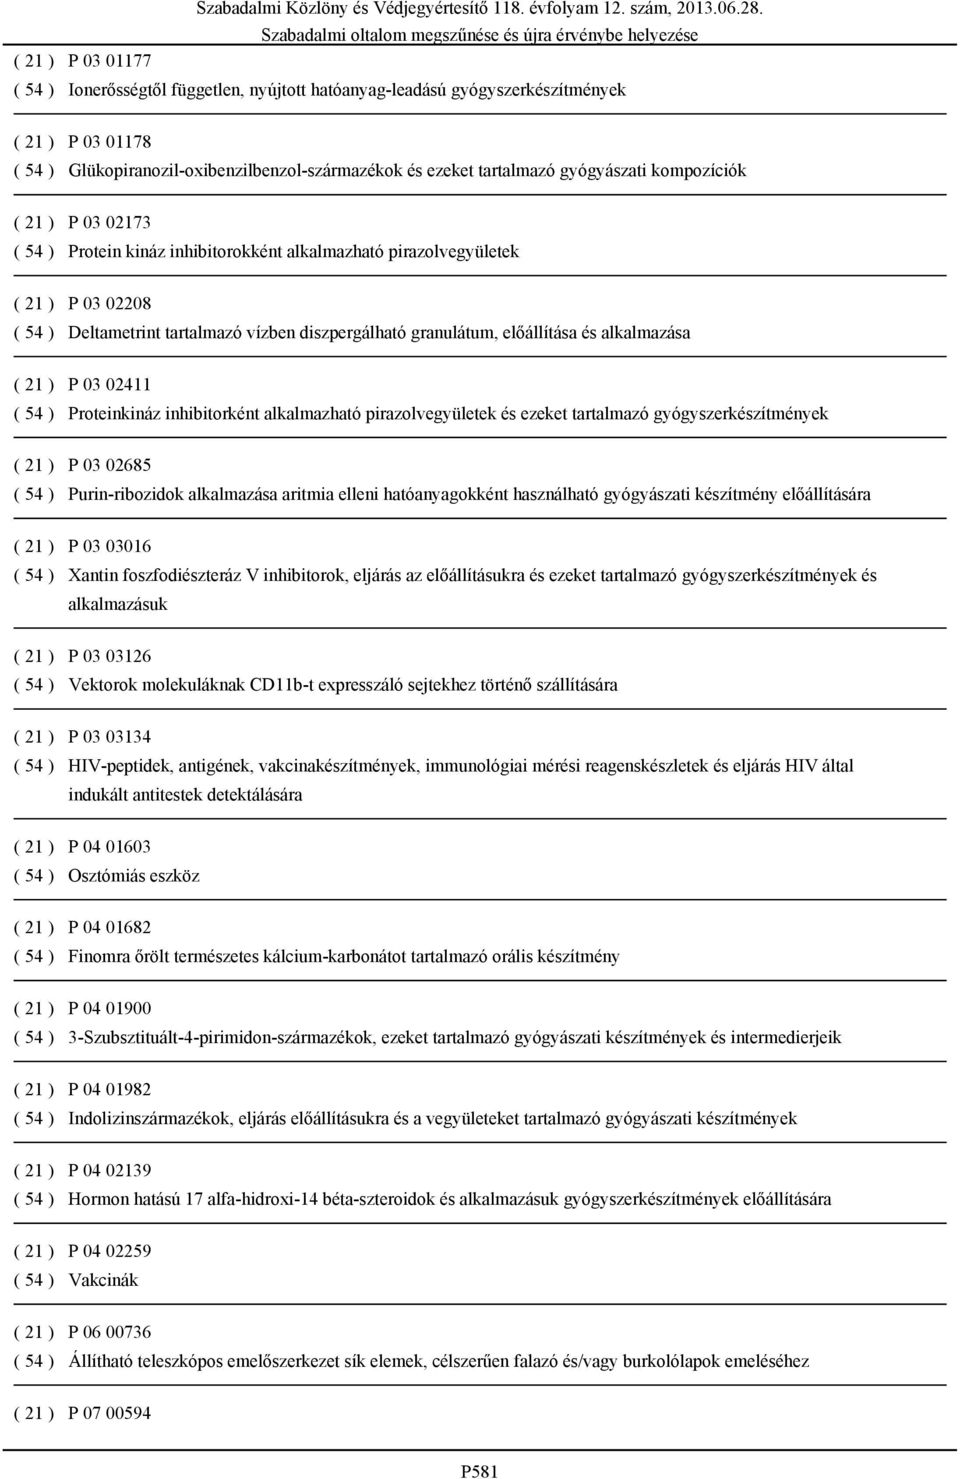 alkalmazása ( 21 ) P 03 02411 ( 54 ) Proteinkináz inhibitorként alkalmazható pirazolvegyületek és ezeket tartalmazó gyógyszerkészítmények ( 21 ) P 03 02685 ( 54 ) Purin-ribozidok alkalmazása aritmia